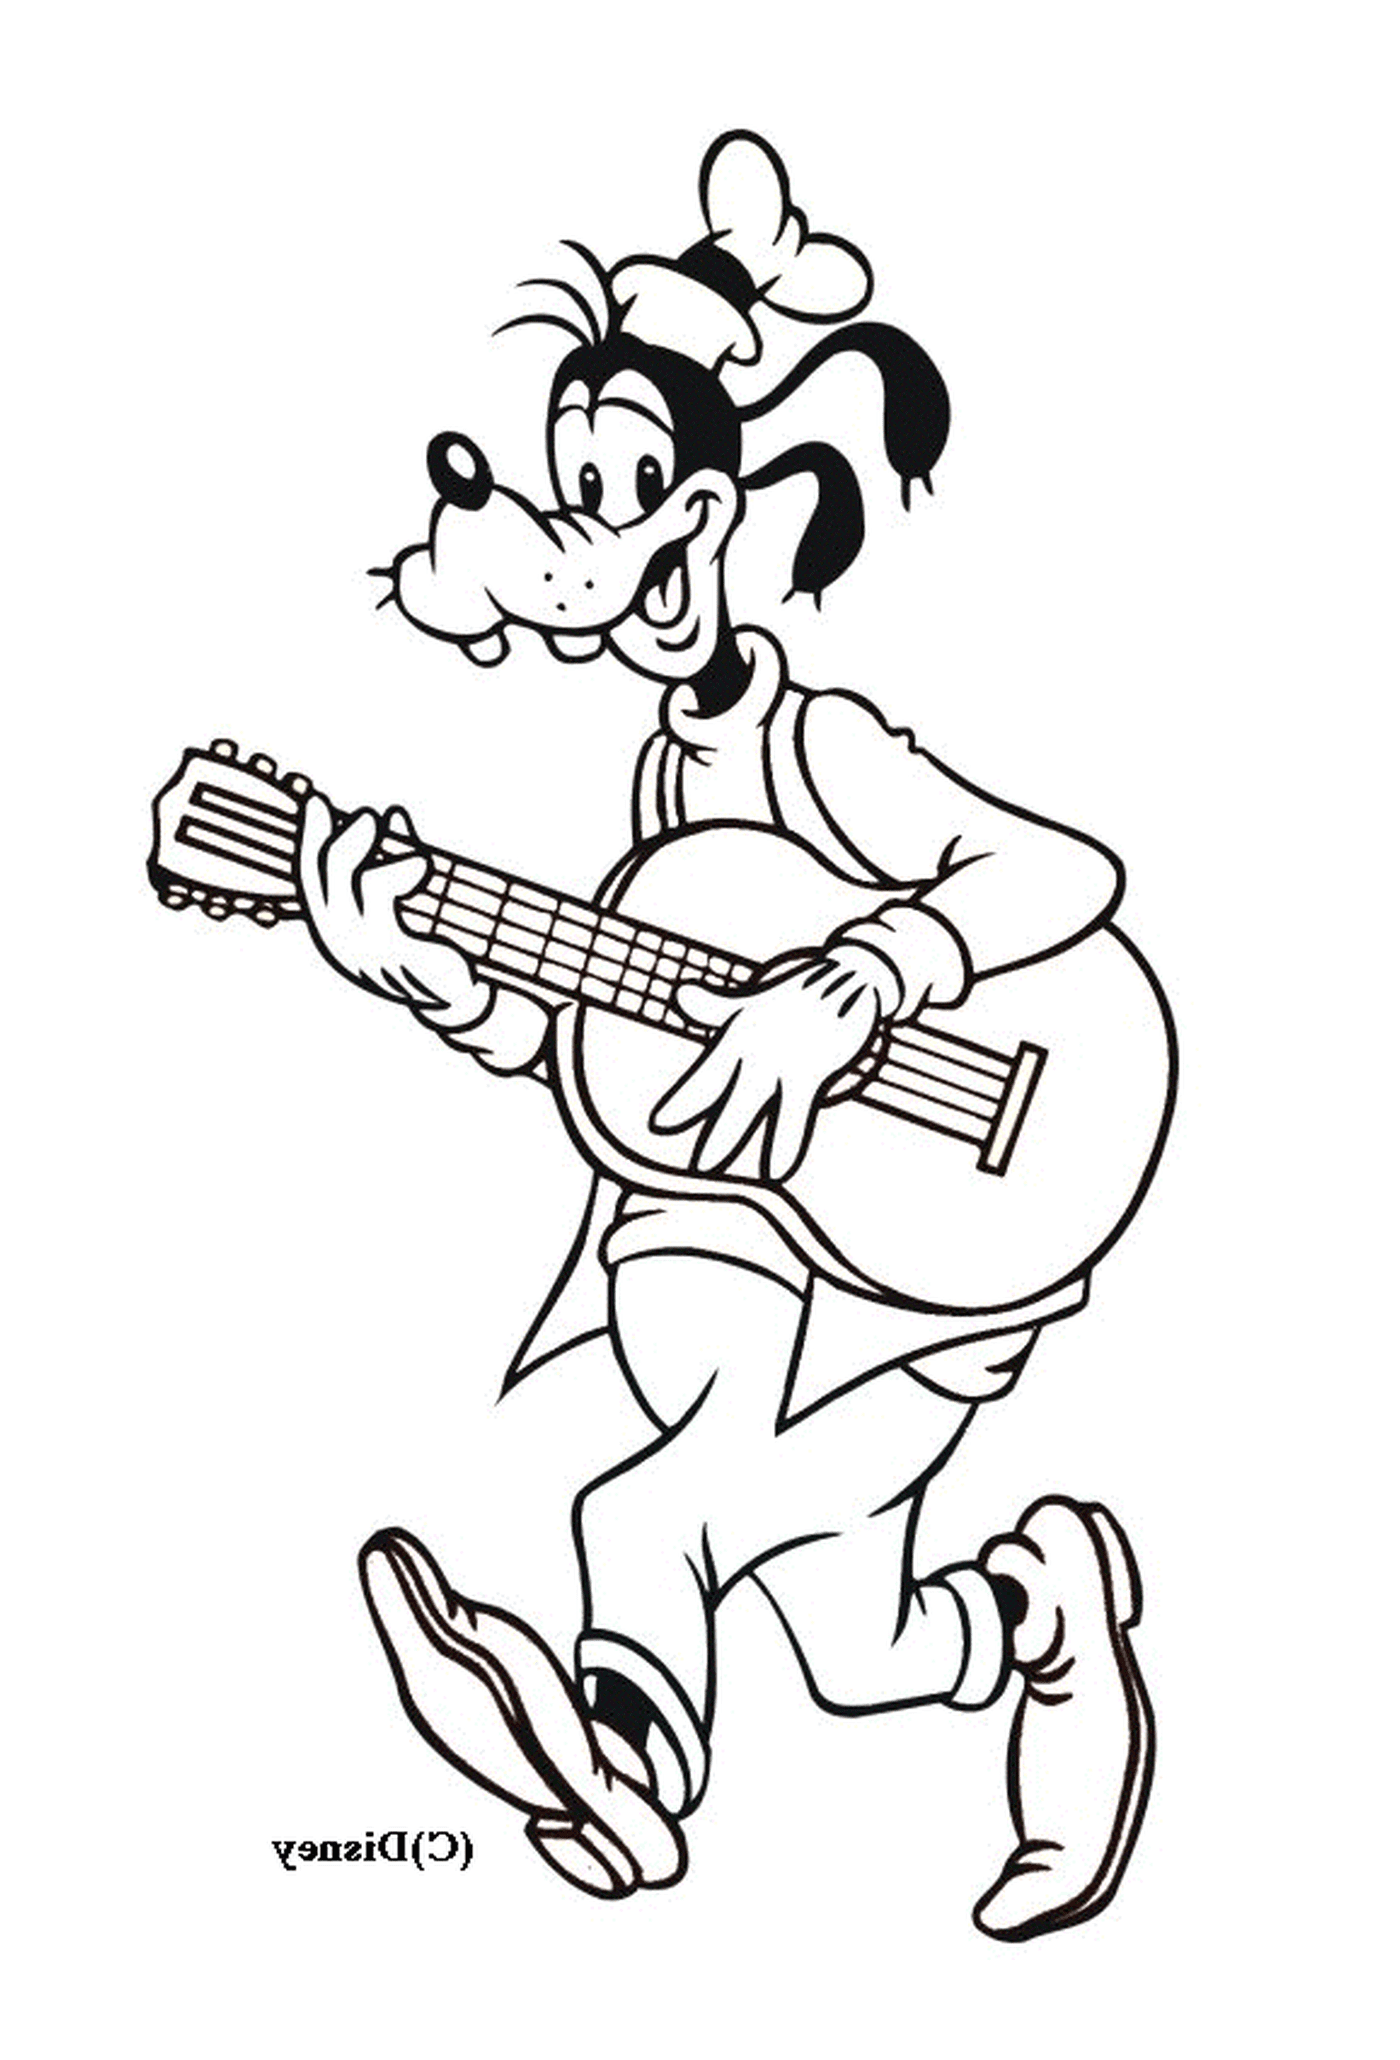   Dingo joue de la guitare en restant debout 